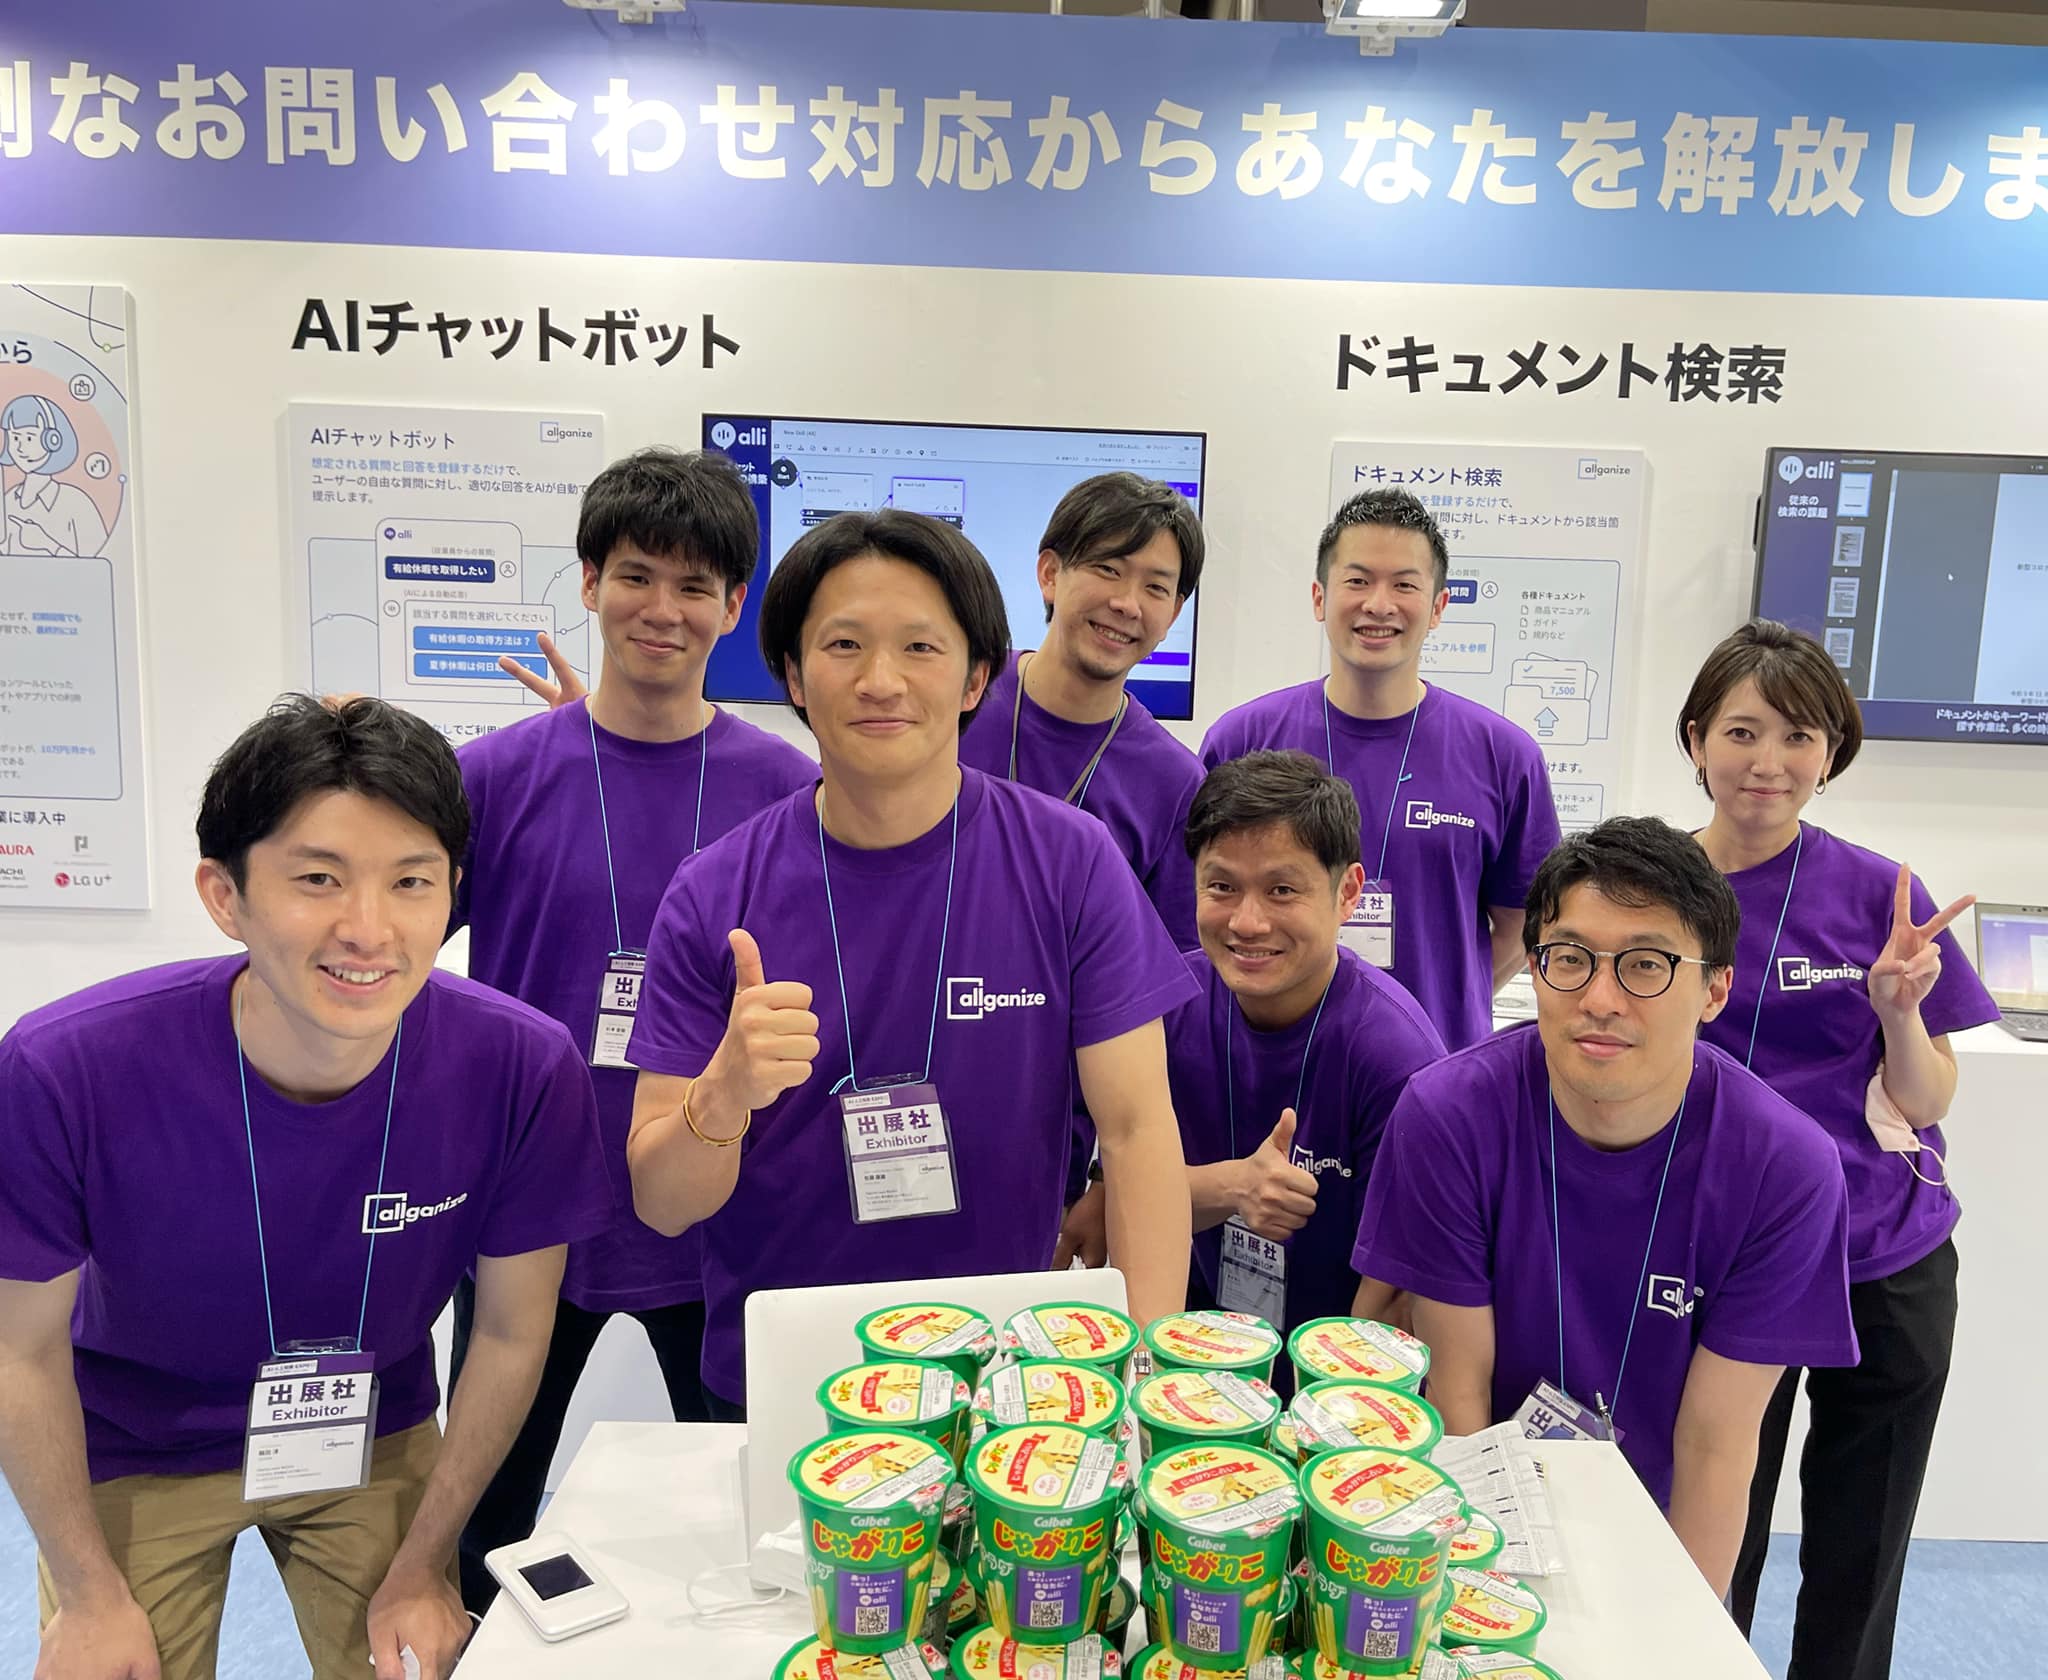 ■イベント告知■ 日本を中心にグローバルで採用が続くAllganize（オルガナイズ）の自然言語理解AIソリューション、 明日（5/11）より開催の ”AI・人工知能EXPO【春】” にて出展